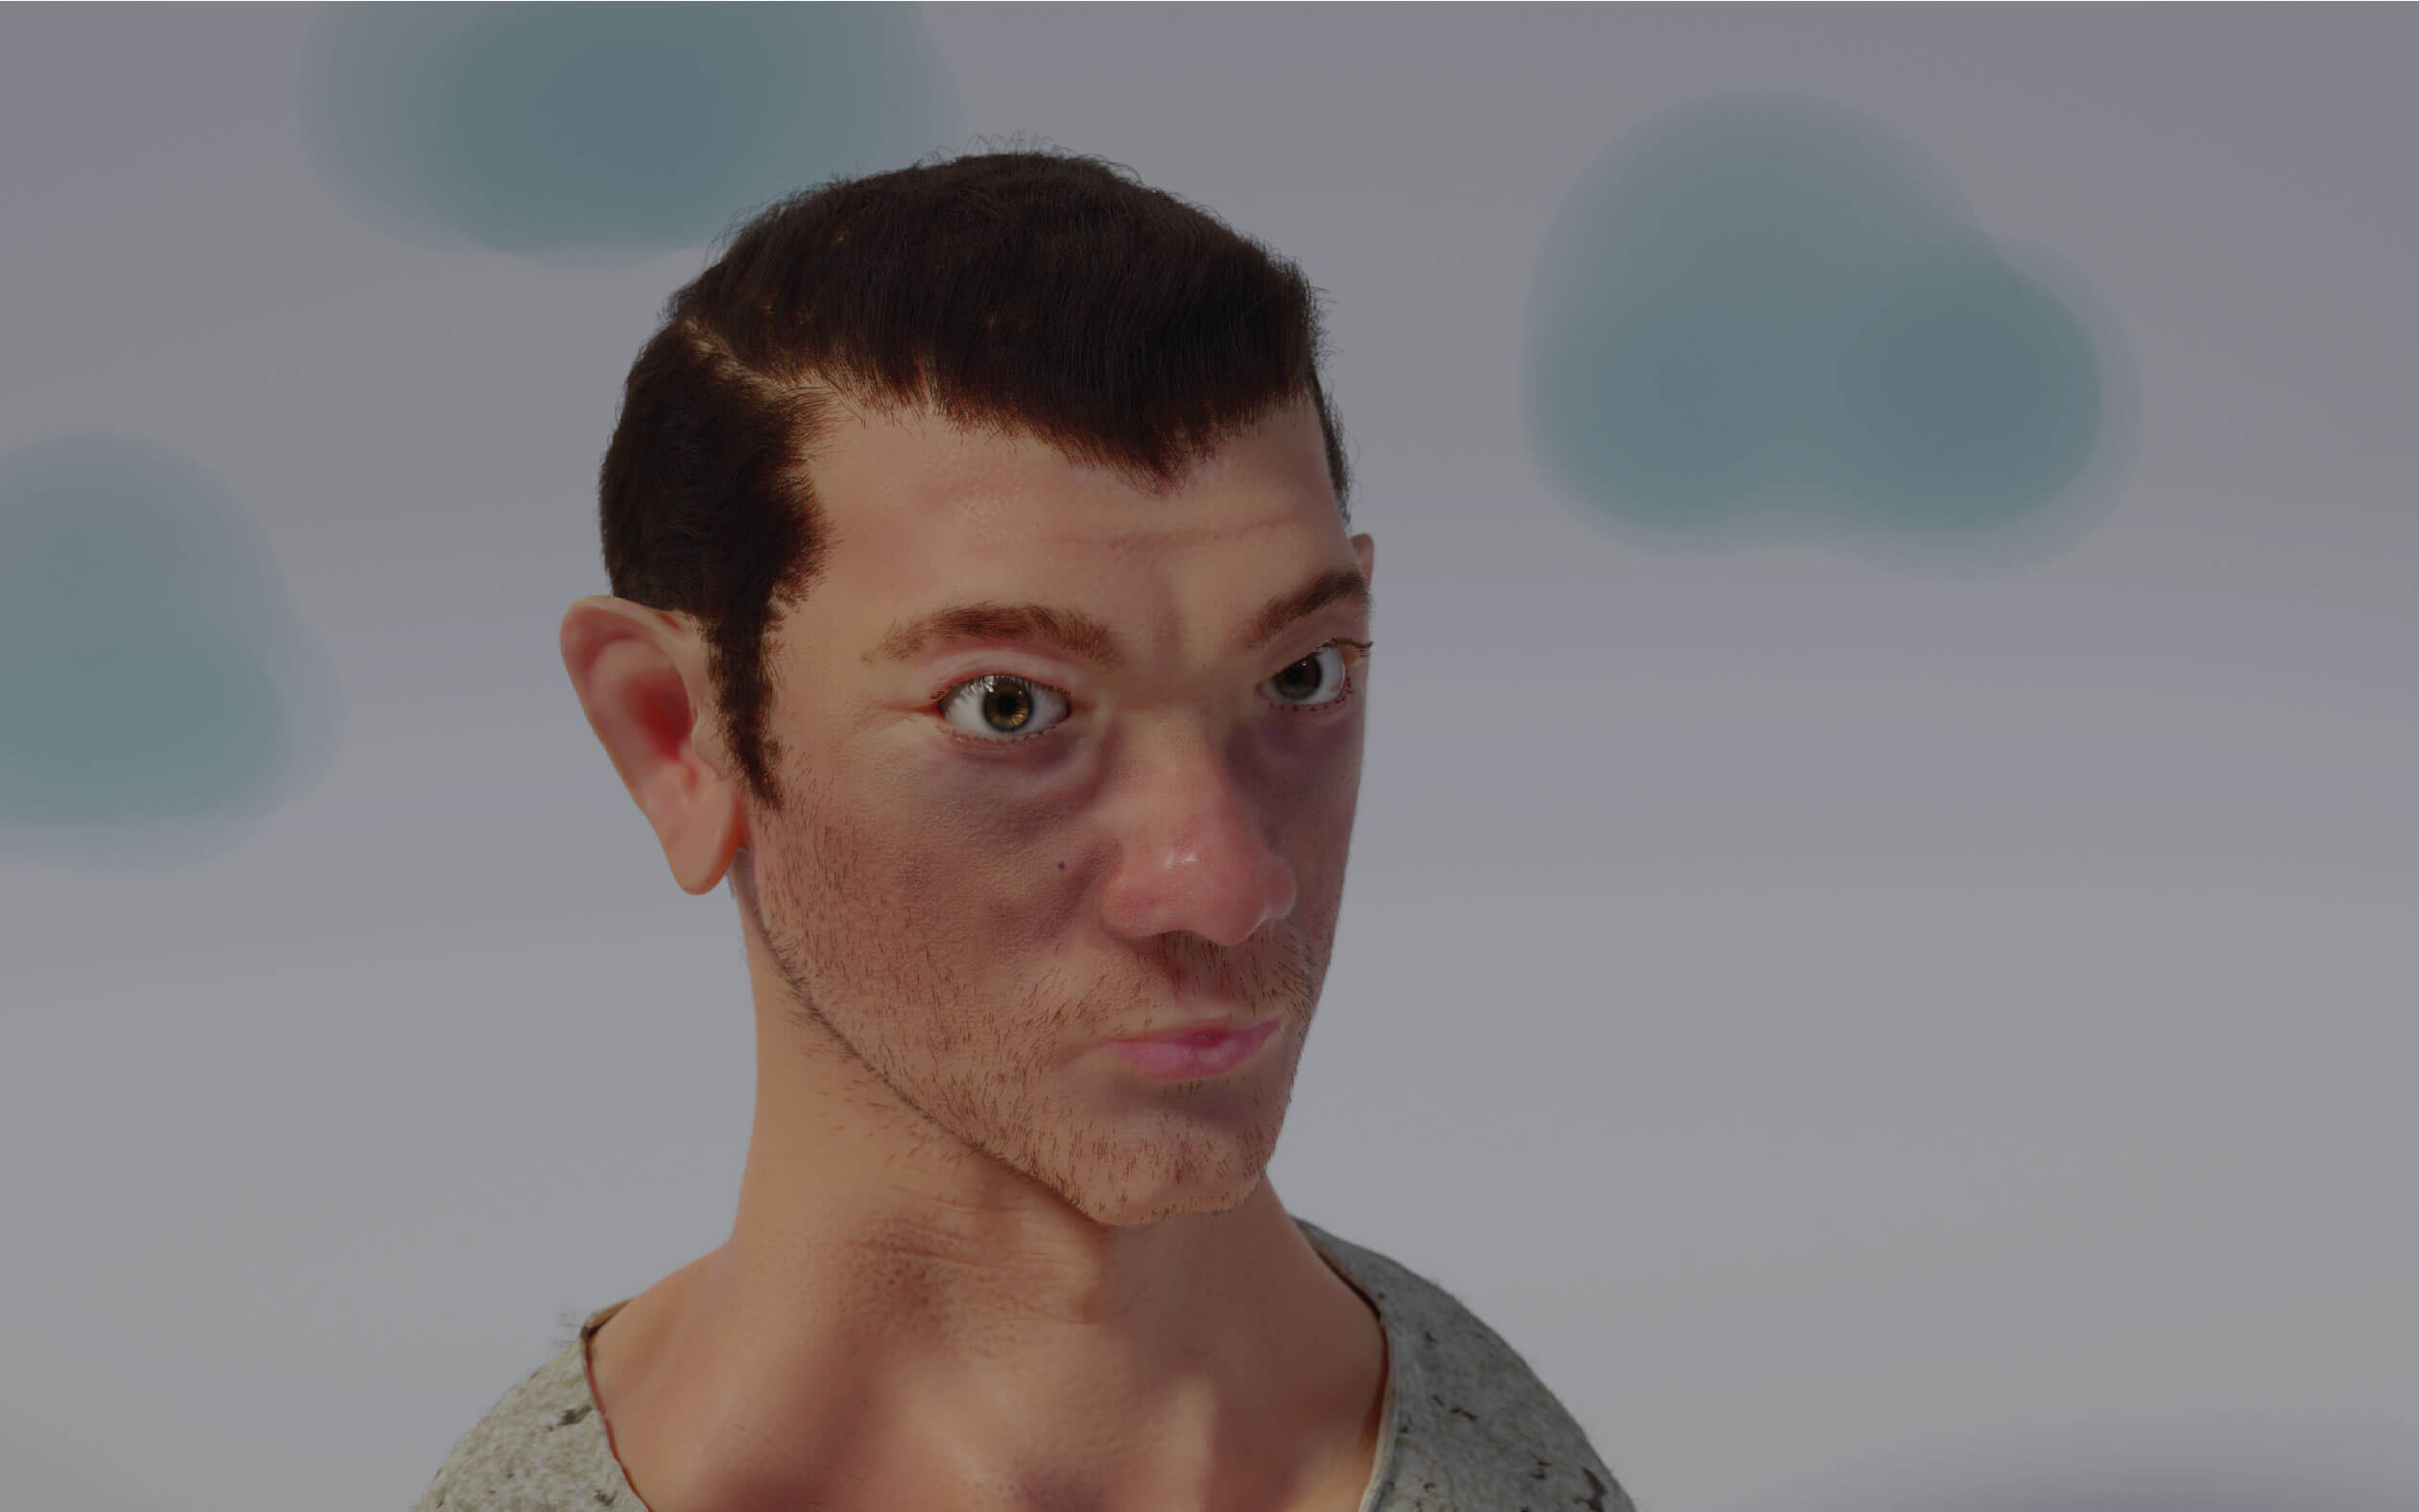 Human face render #2 neutral